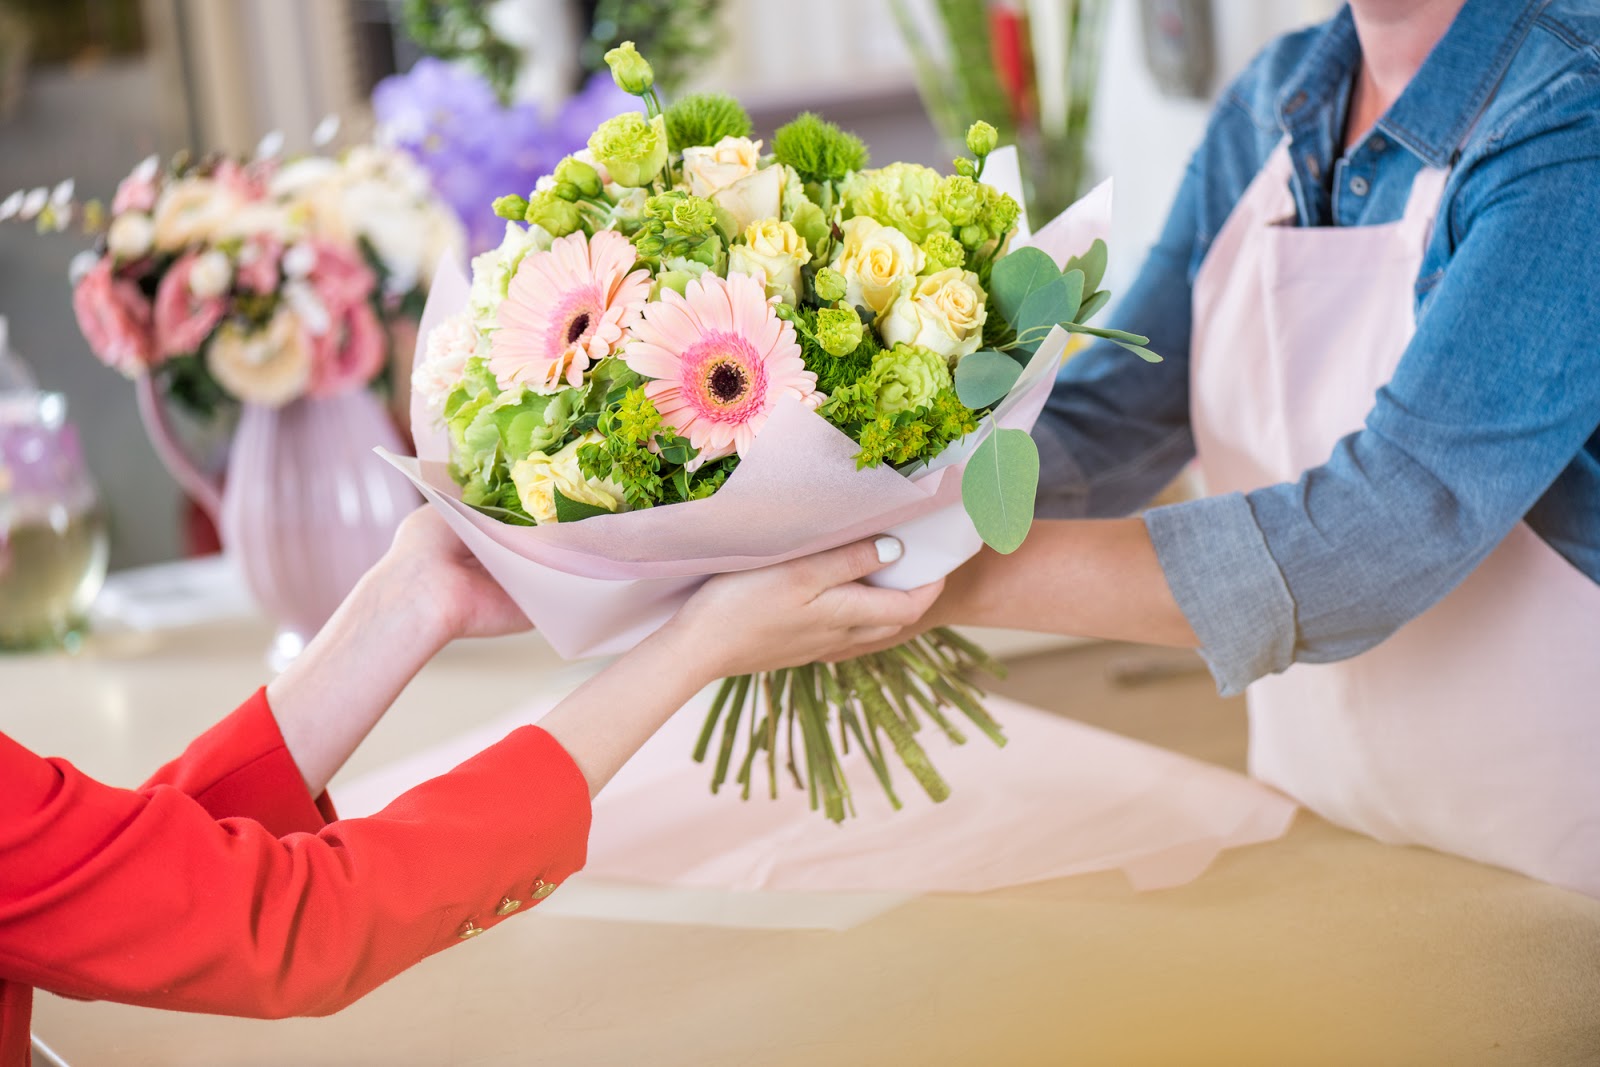 Tặng hoa với dịch vụ chuyển phát nhanh quà tặng uy tín